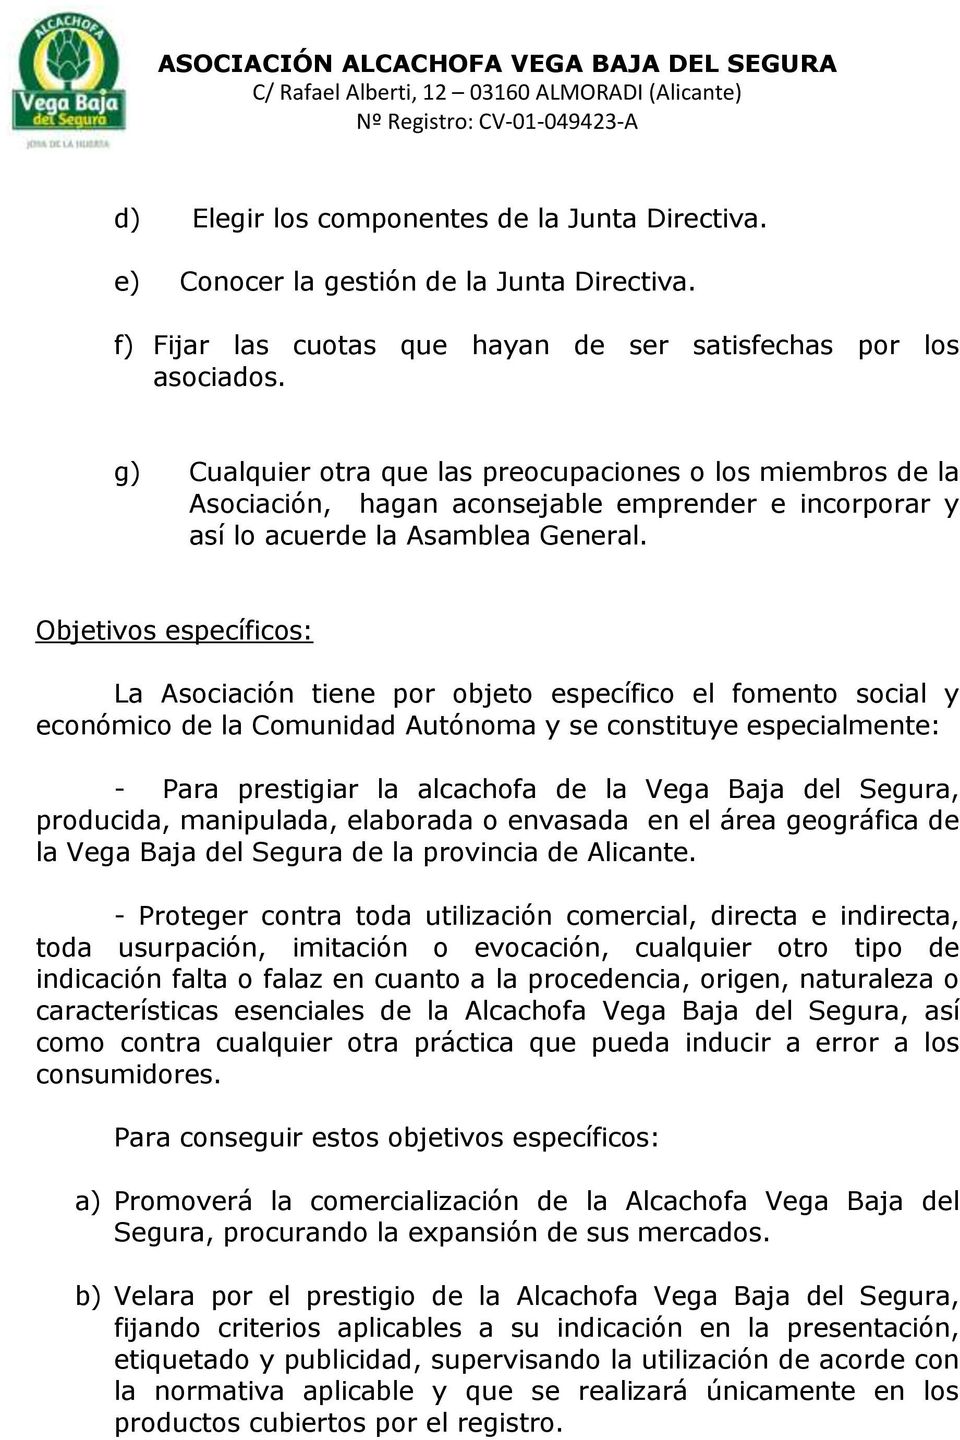 Objetivos específicos: La Asociación tiene por objeto específico el fomento social y económico de la Comunidad Autónoma y se constituye especialmente: - Para prestigiar la alcachofa de la Vega Baja